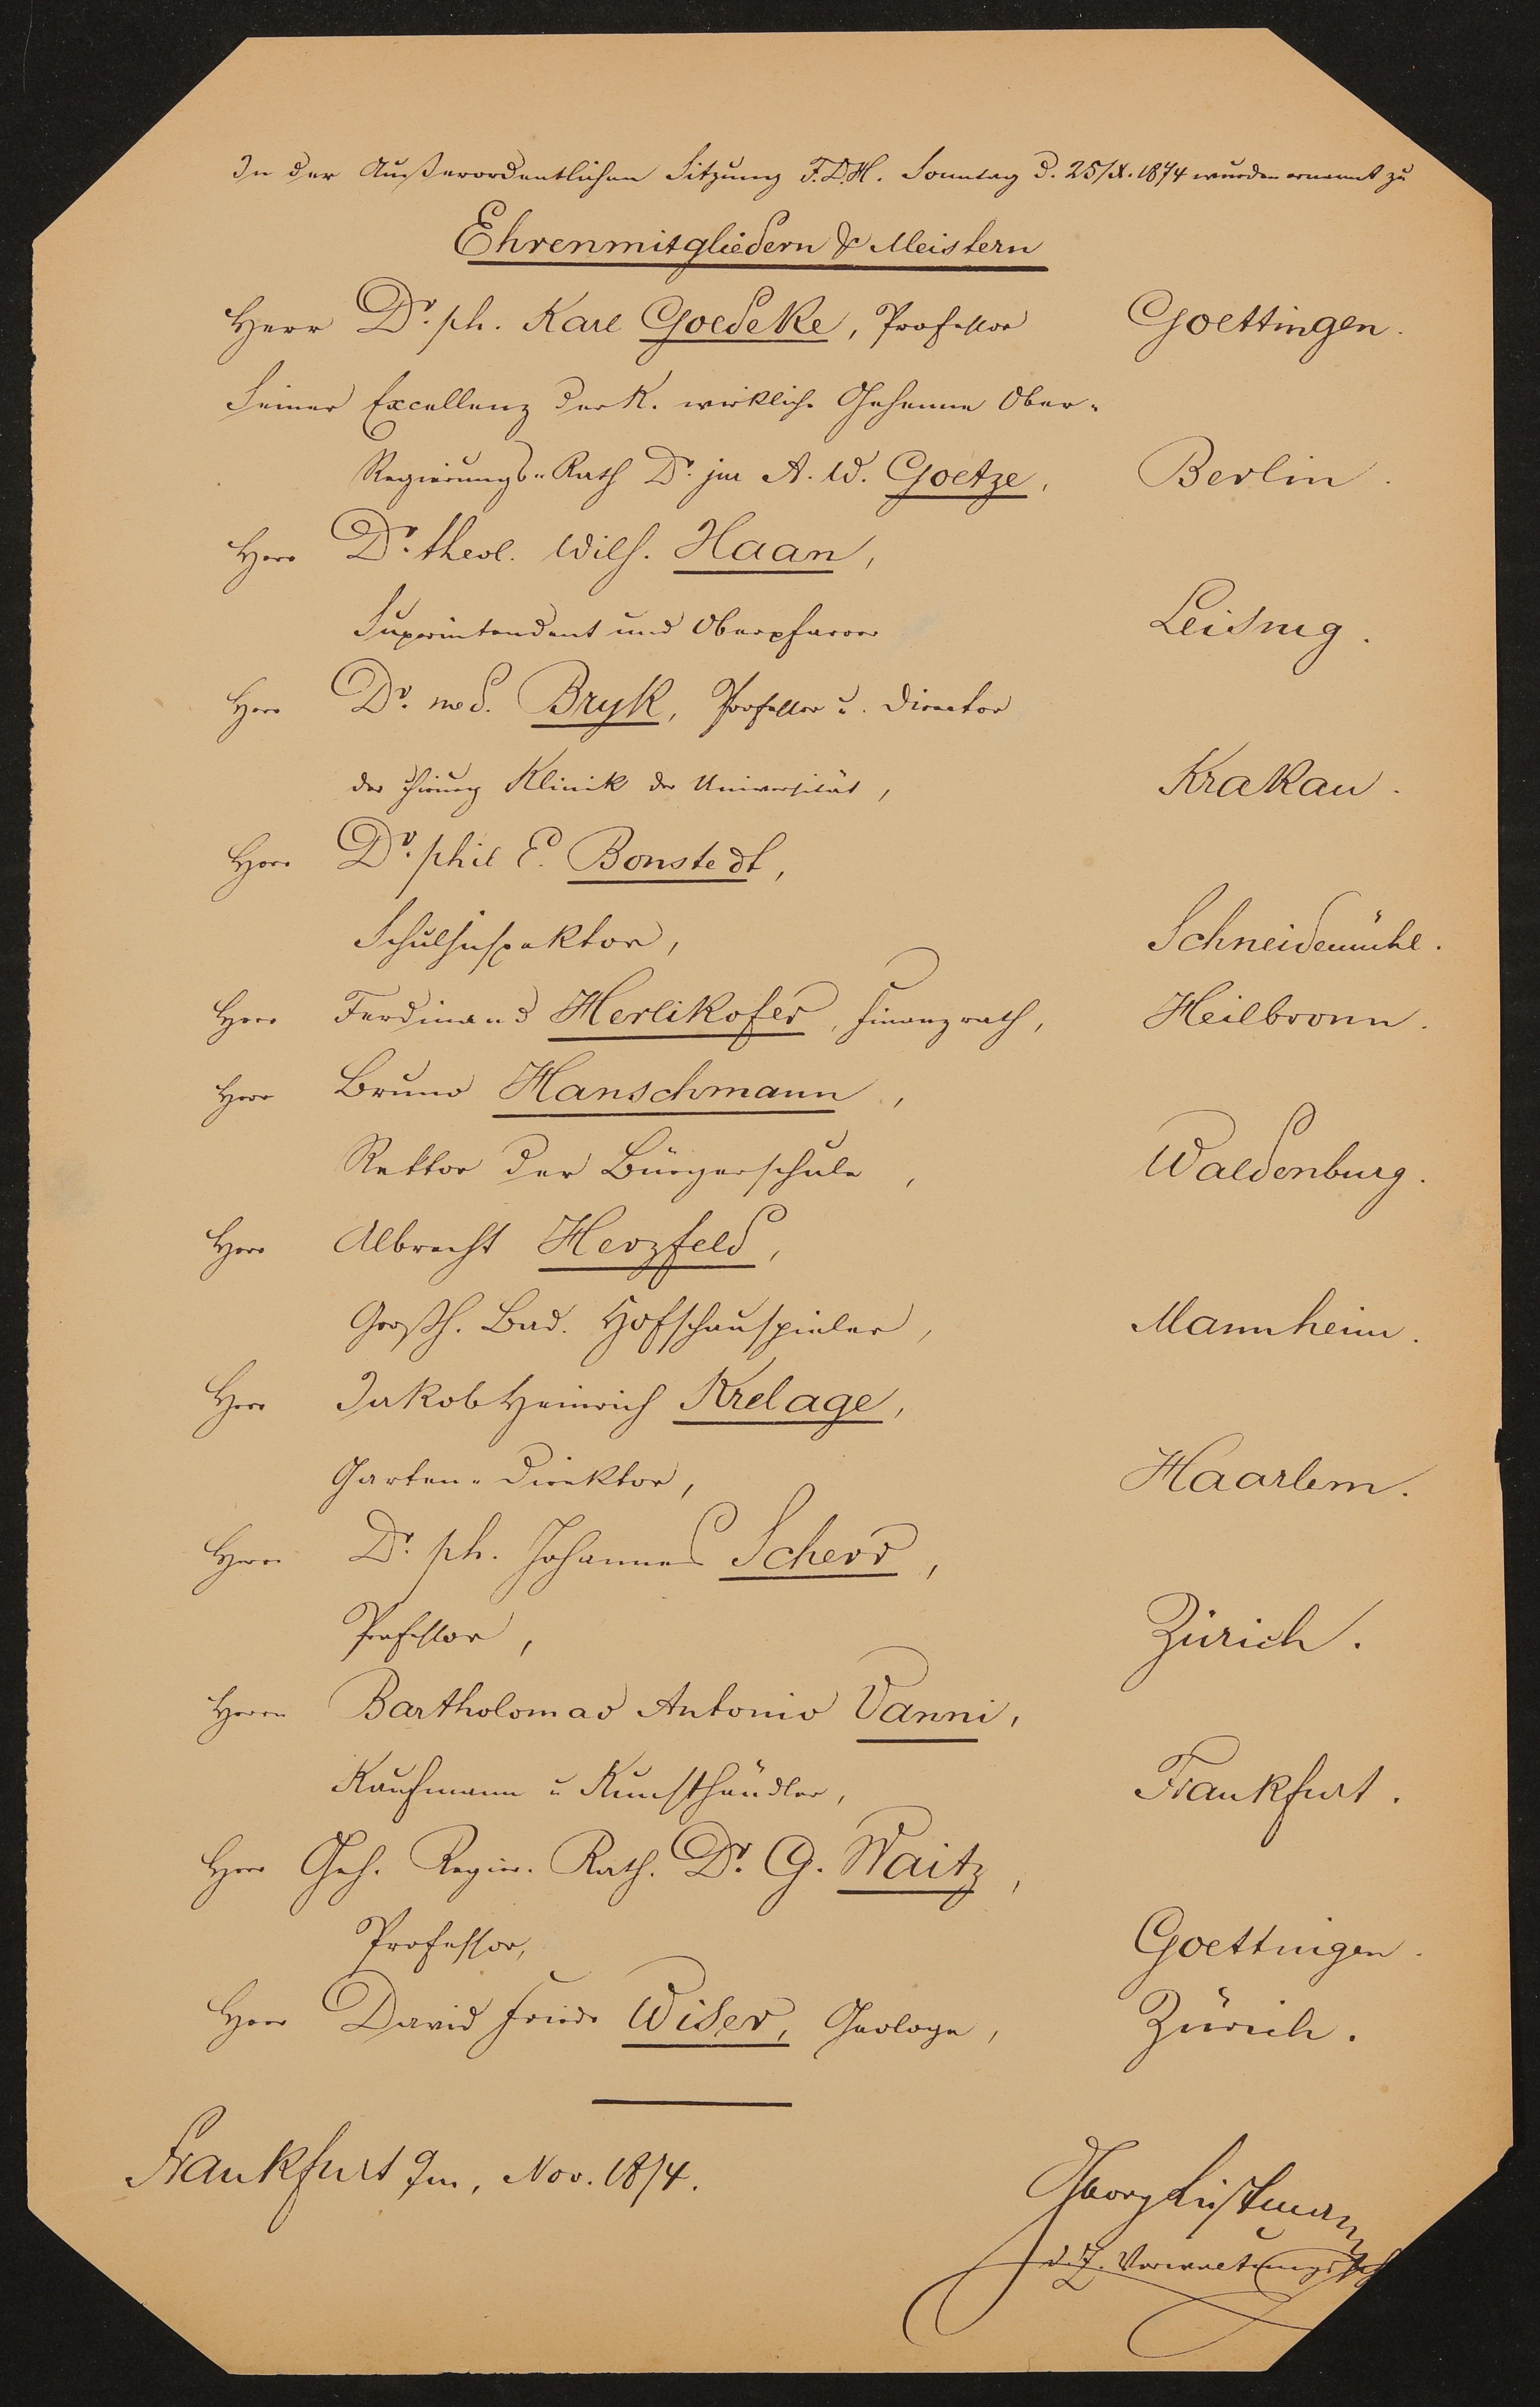 Liste "In der Außerordentlichen Sitzung F.D.H. Sonntag den 25.10.1874 wurden ernannt zu Ehrenmitgliedern & Meistern" (Freies Deutsches Hochstift / Frankfurter Goethe-Museum Public Domain Mark)